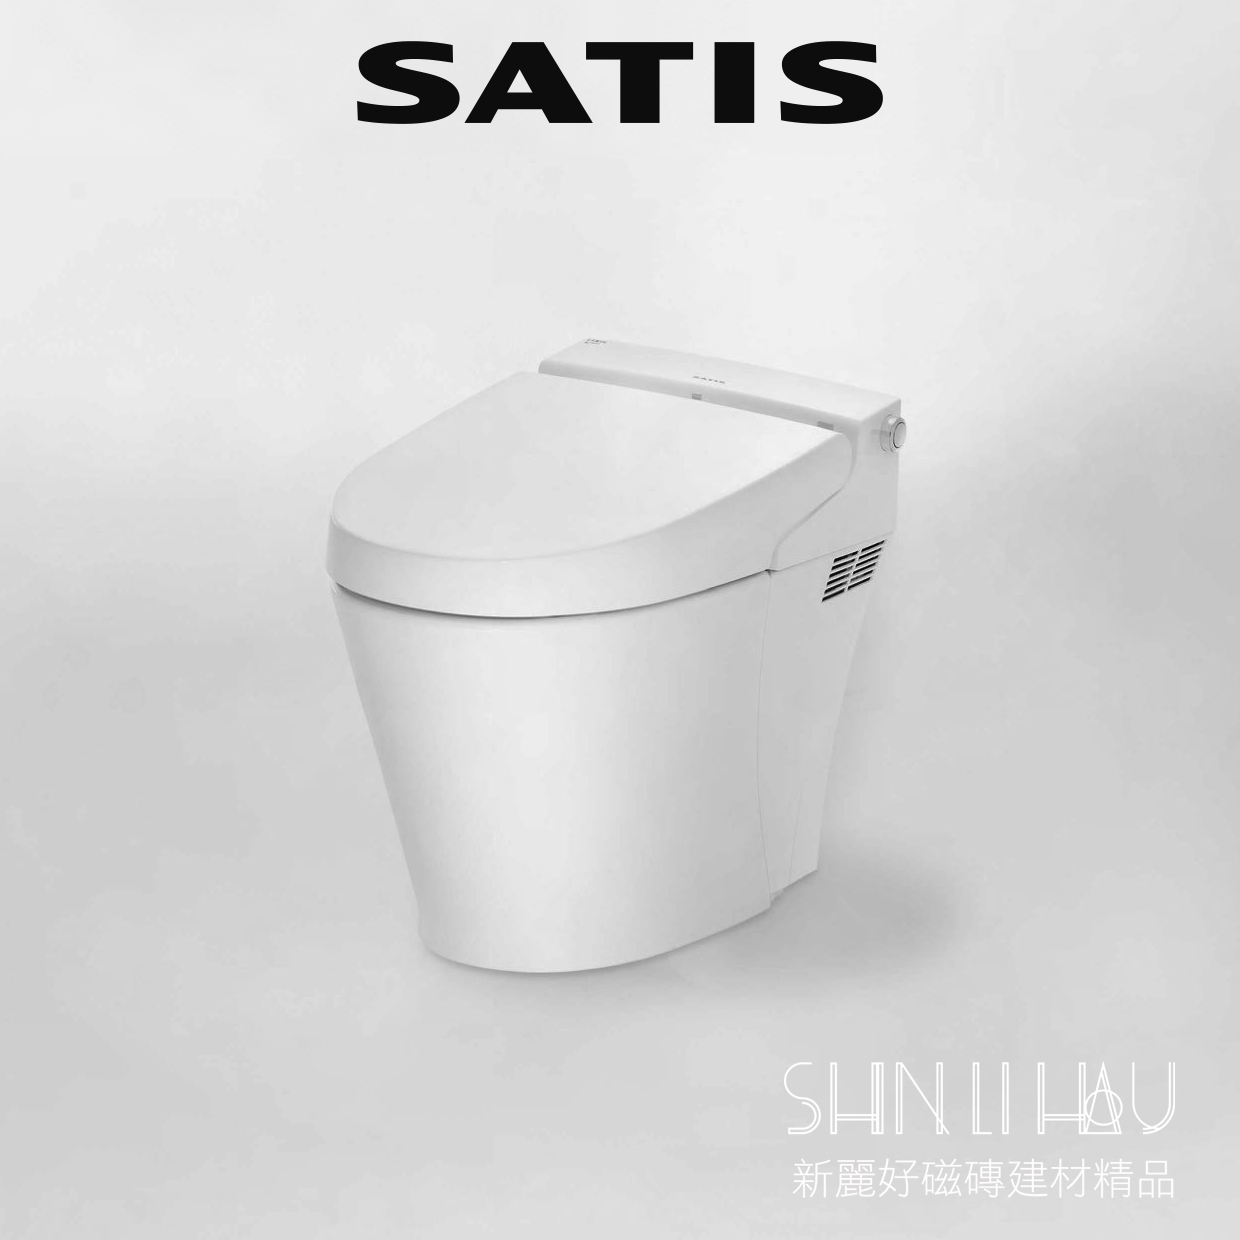 全自動電腦馬桶 - SATIS S (S616)